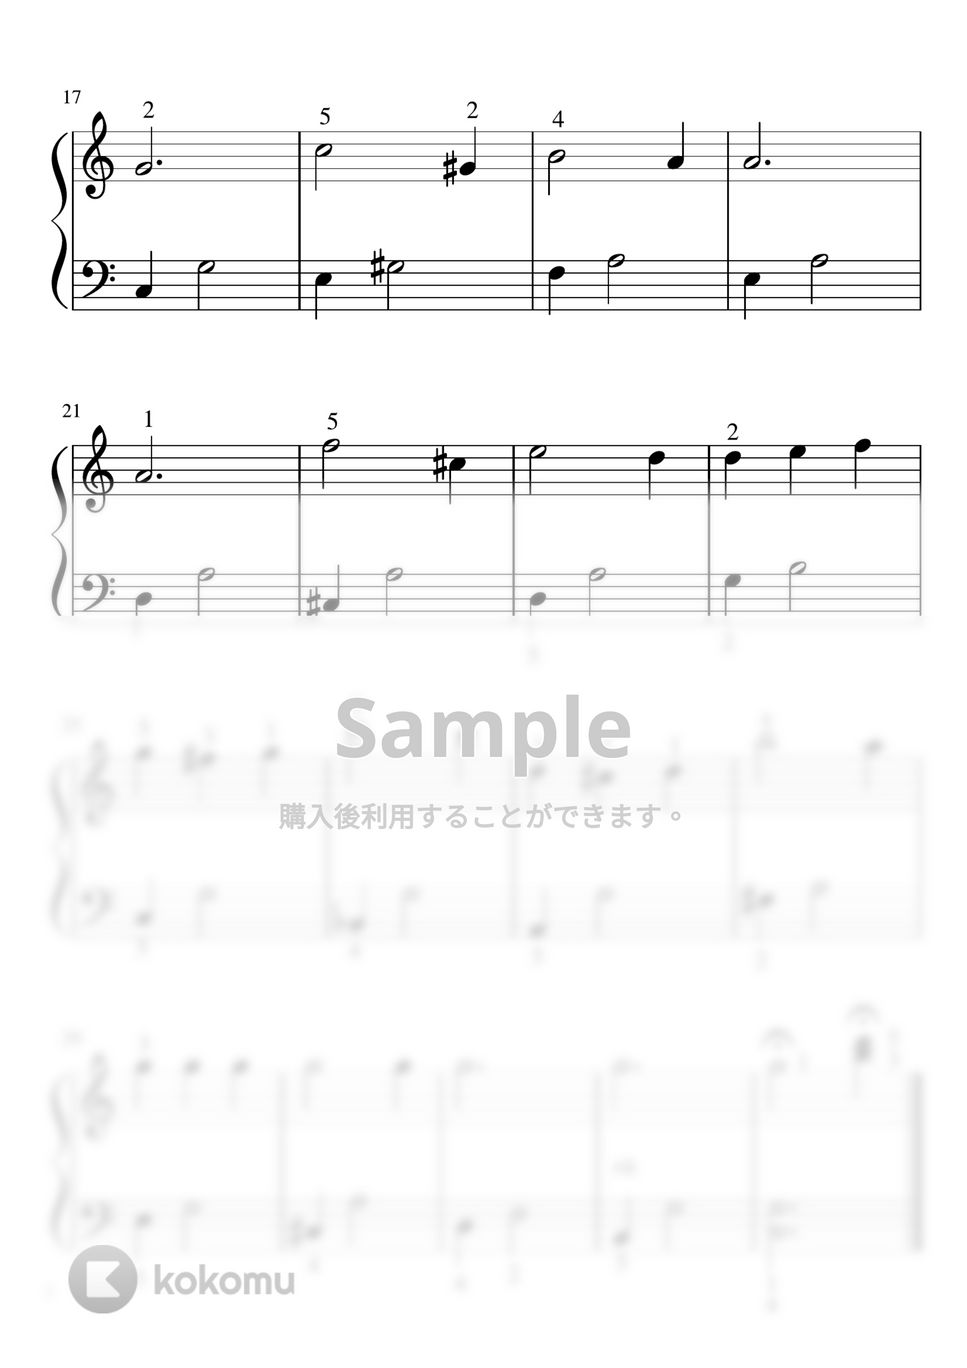 フランクチャーチル - いつか王子様が (Cdur・ピアノソロ入門〜初級・指番号) by pfkaori